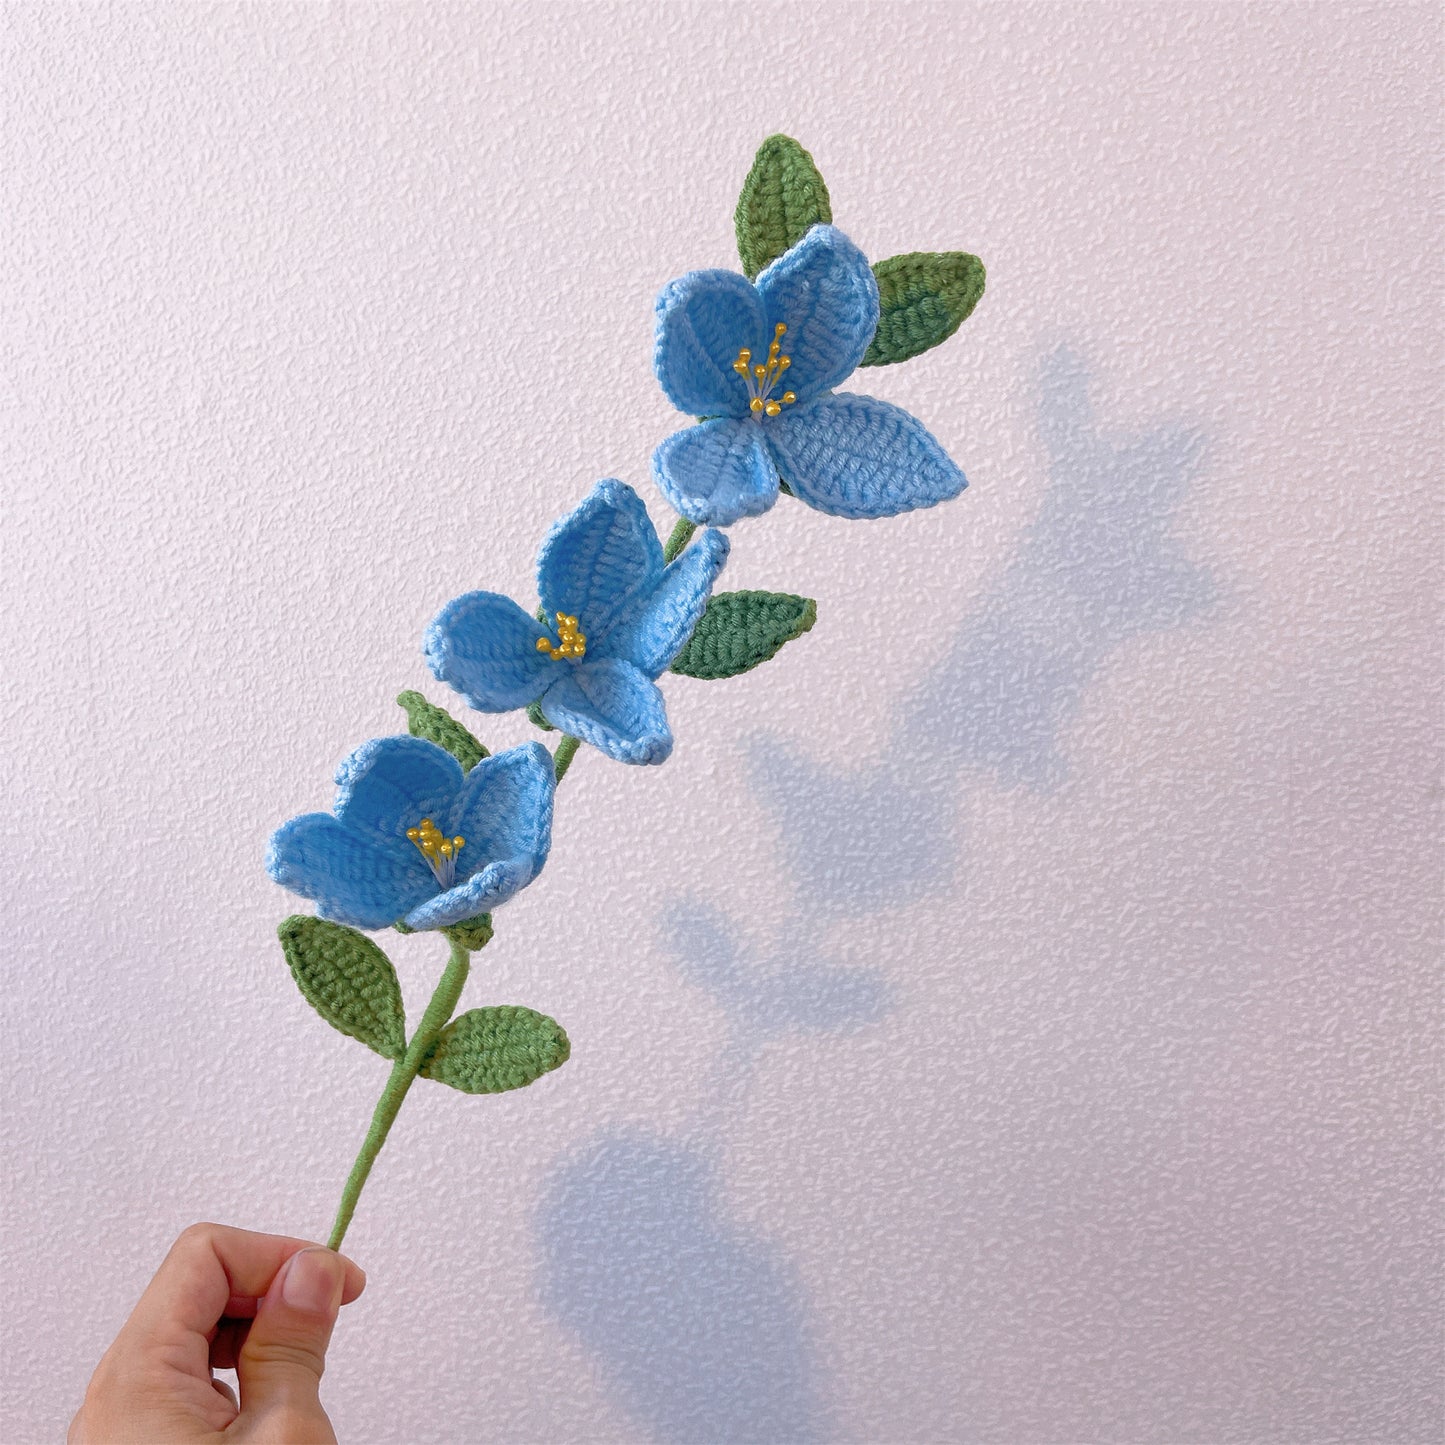 Forsythia Sunshine: Handgefertigter gehäkelter Forsythia-Blumenstecker für eine leuchtende Gartendekoration